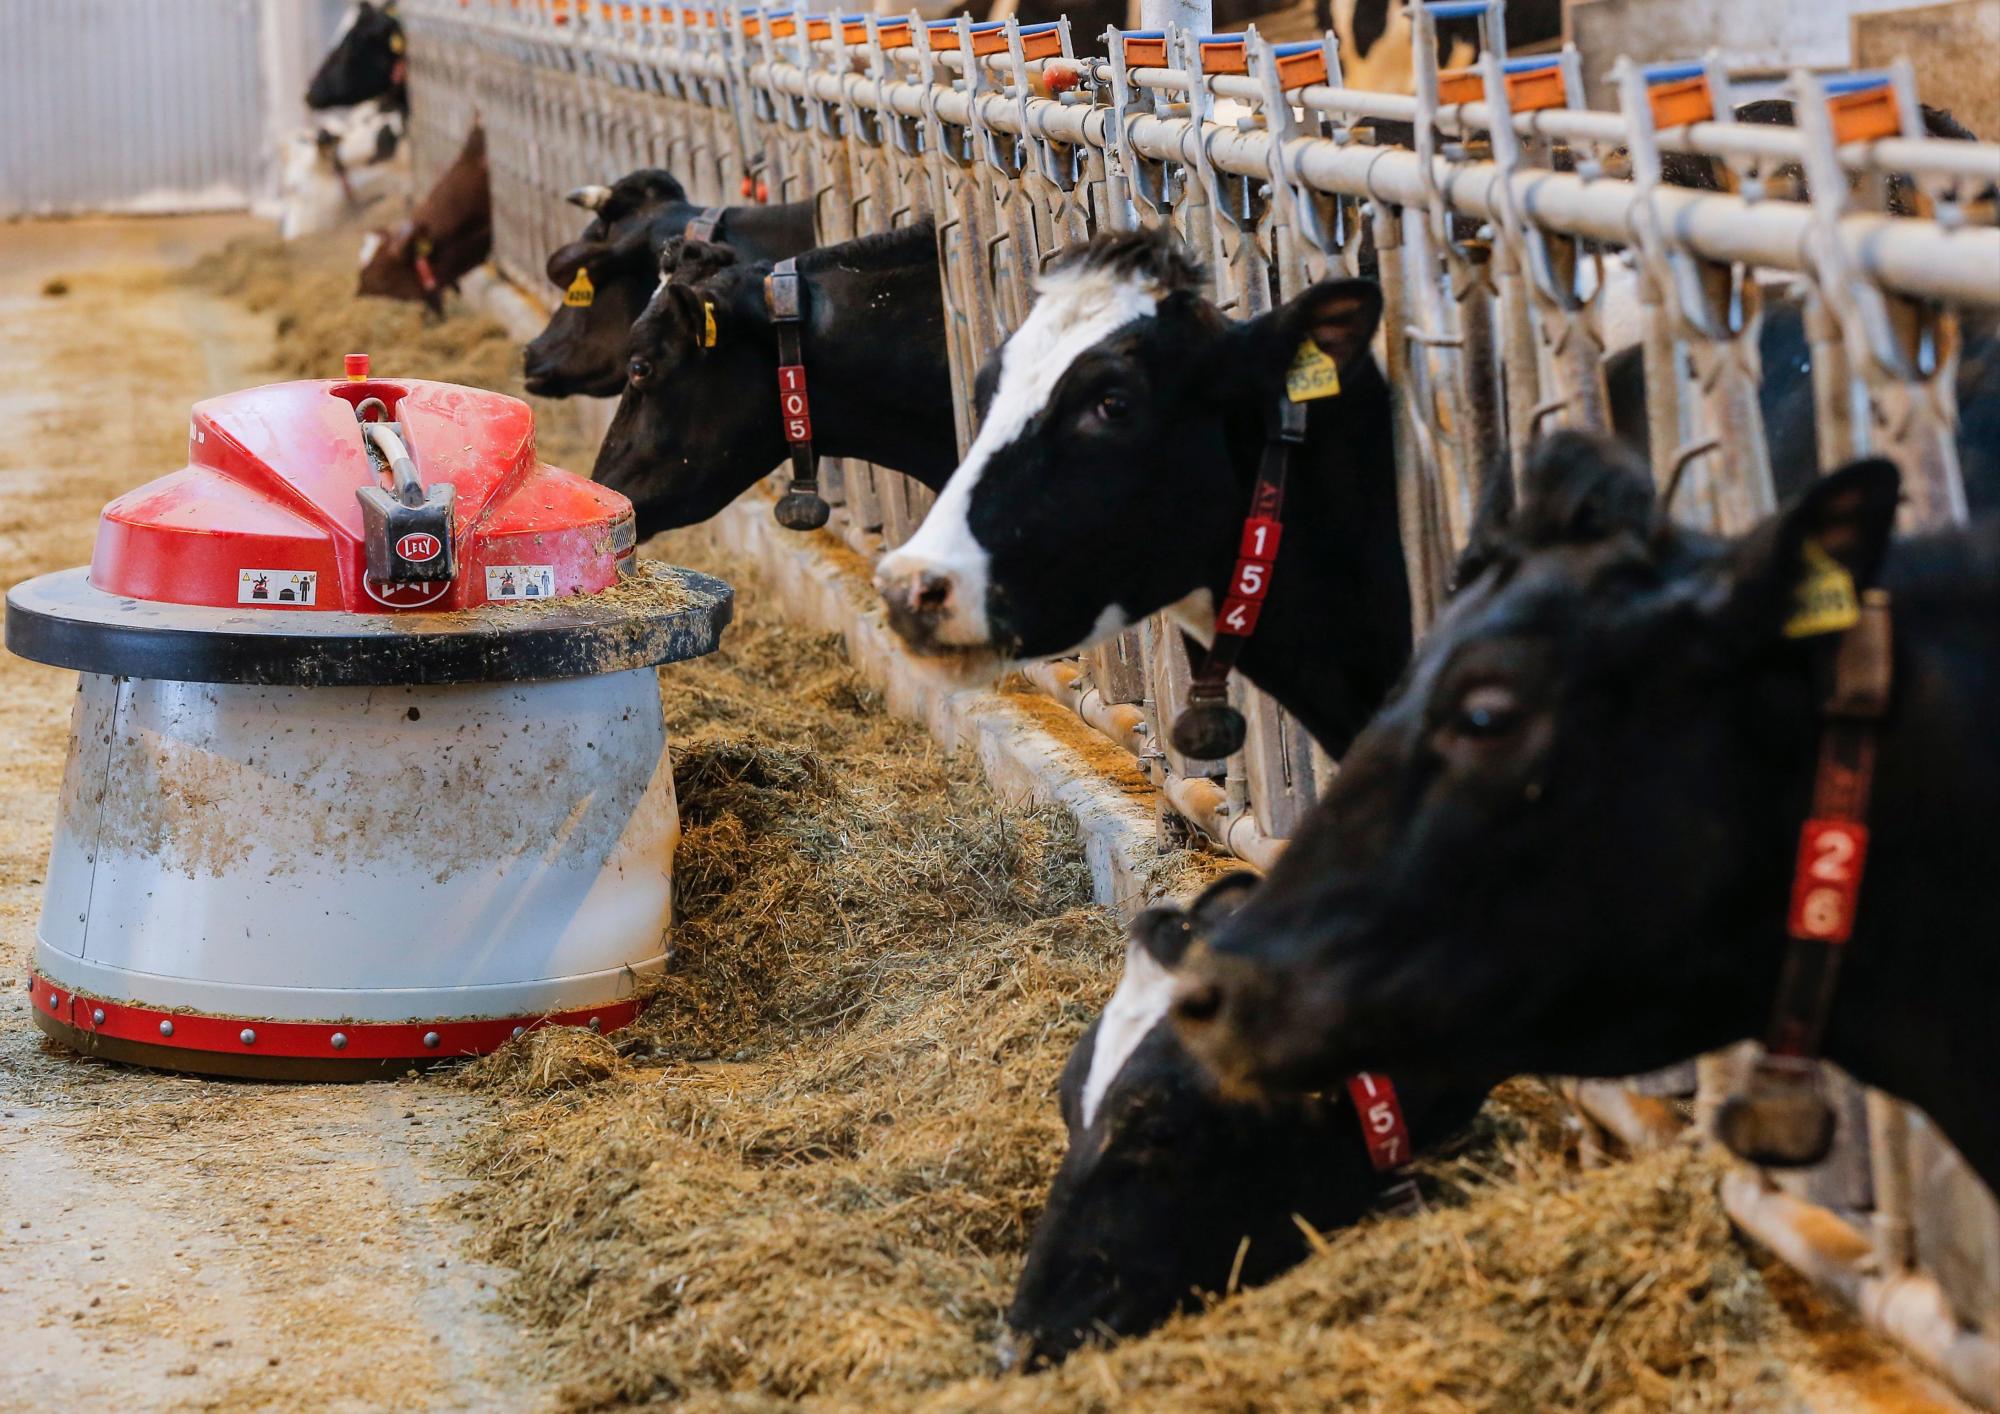 MOSCÚ (RUSIA), 08/02/2017.- Un robot alimenta a varias vacas en la Granja Estatal Lenin de Moscú, Rusia hoy 8 de febrero de 2017. En esta granja, que es una de las mejores del país y ha sido robotizada por la compañía holandesa Lely, ocho robots se encargan de alimentar a 1.050 vacas y sólo hay tres trabajadores a tiempo completo. 